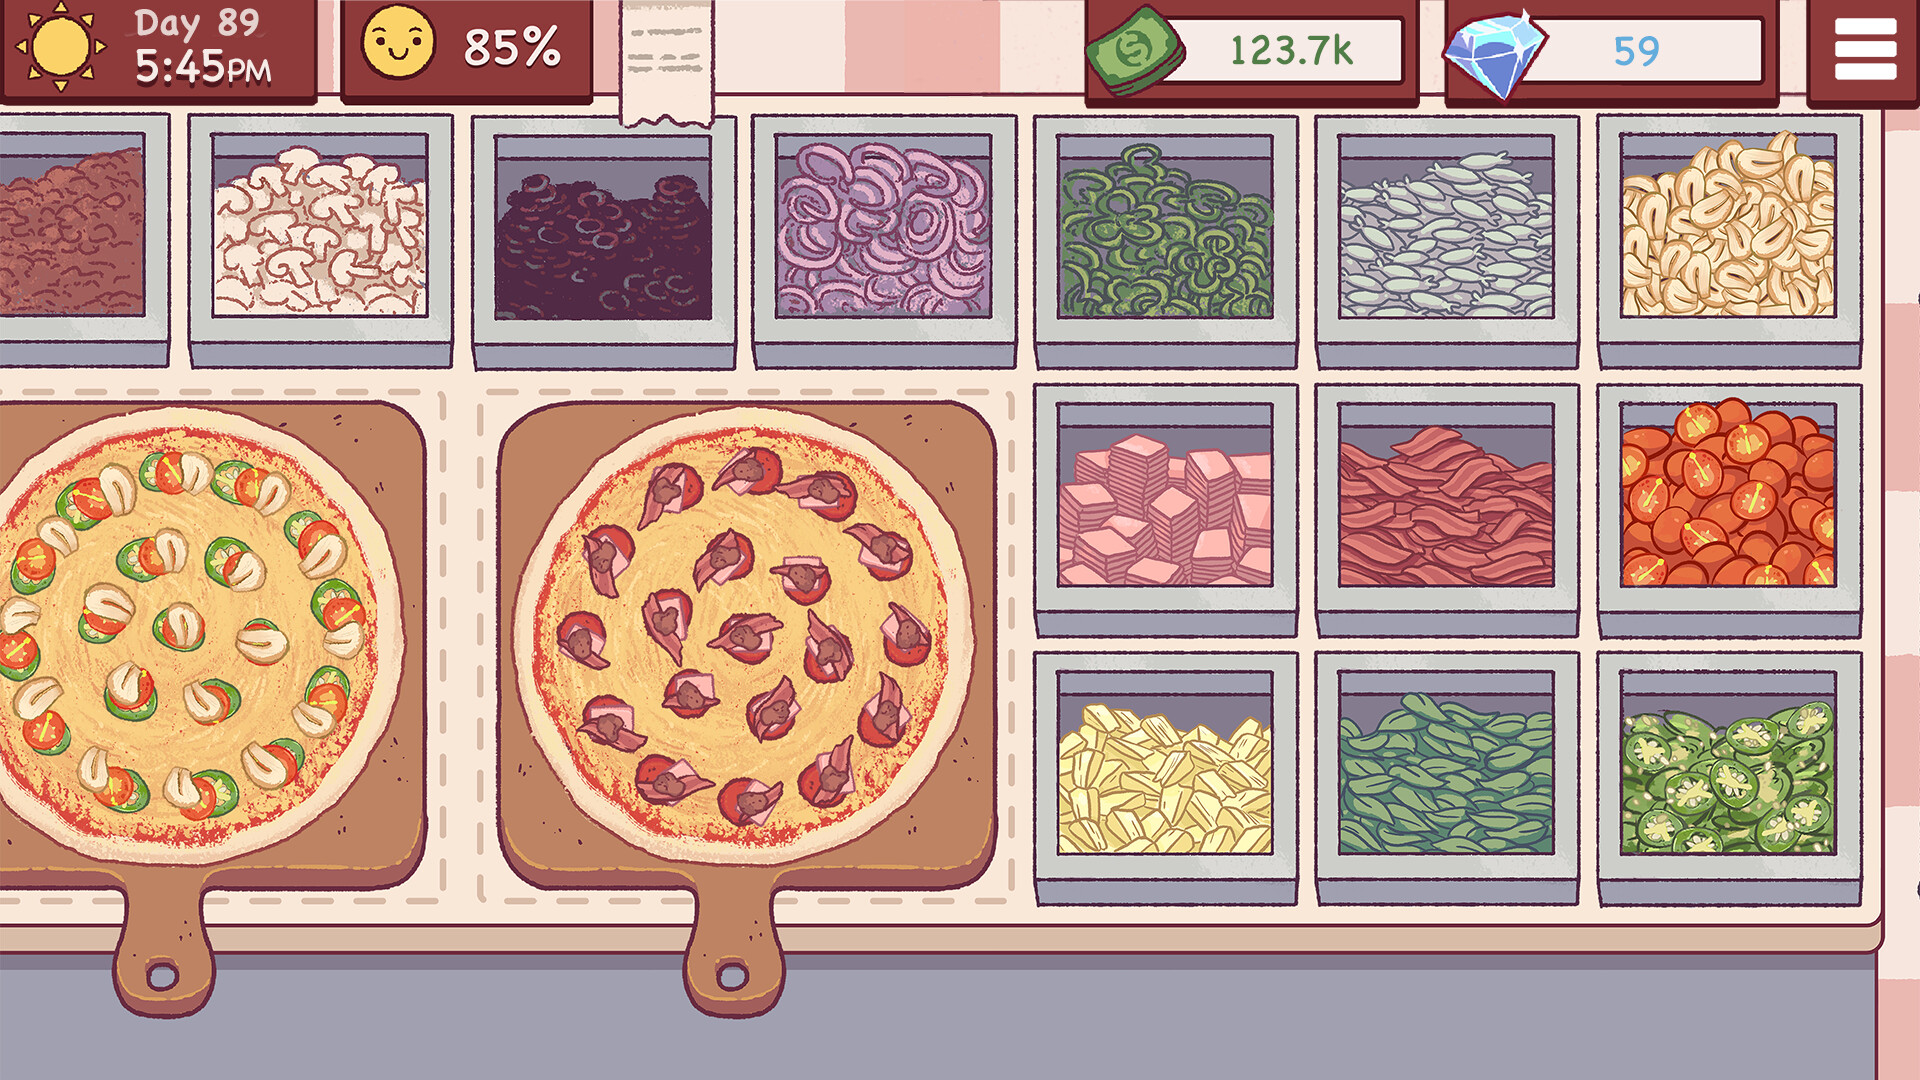 хорошая пицца игра скачать бесплатно на андроид фото 17